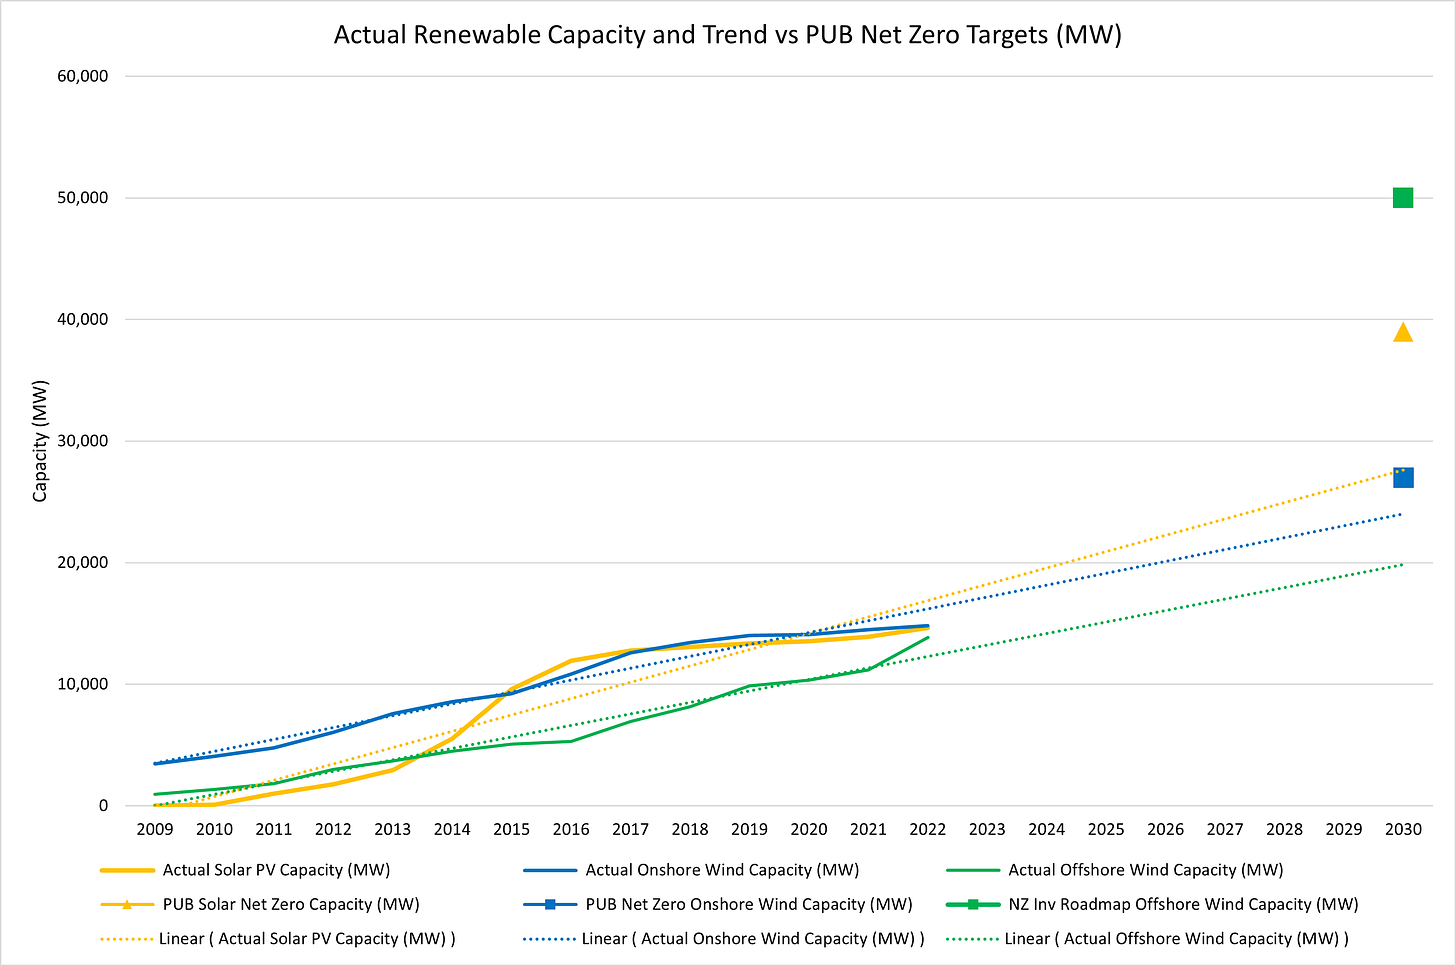 Figure 4 - Actual Renewable Capacity and Trend vs Net Zero Targets